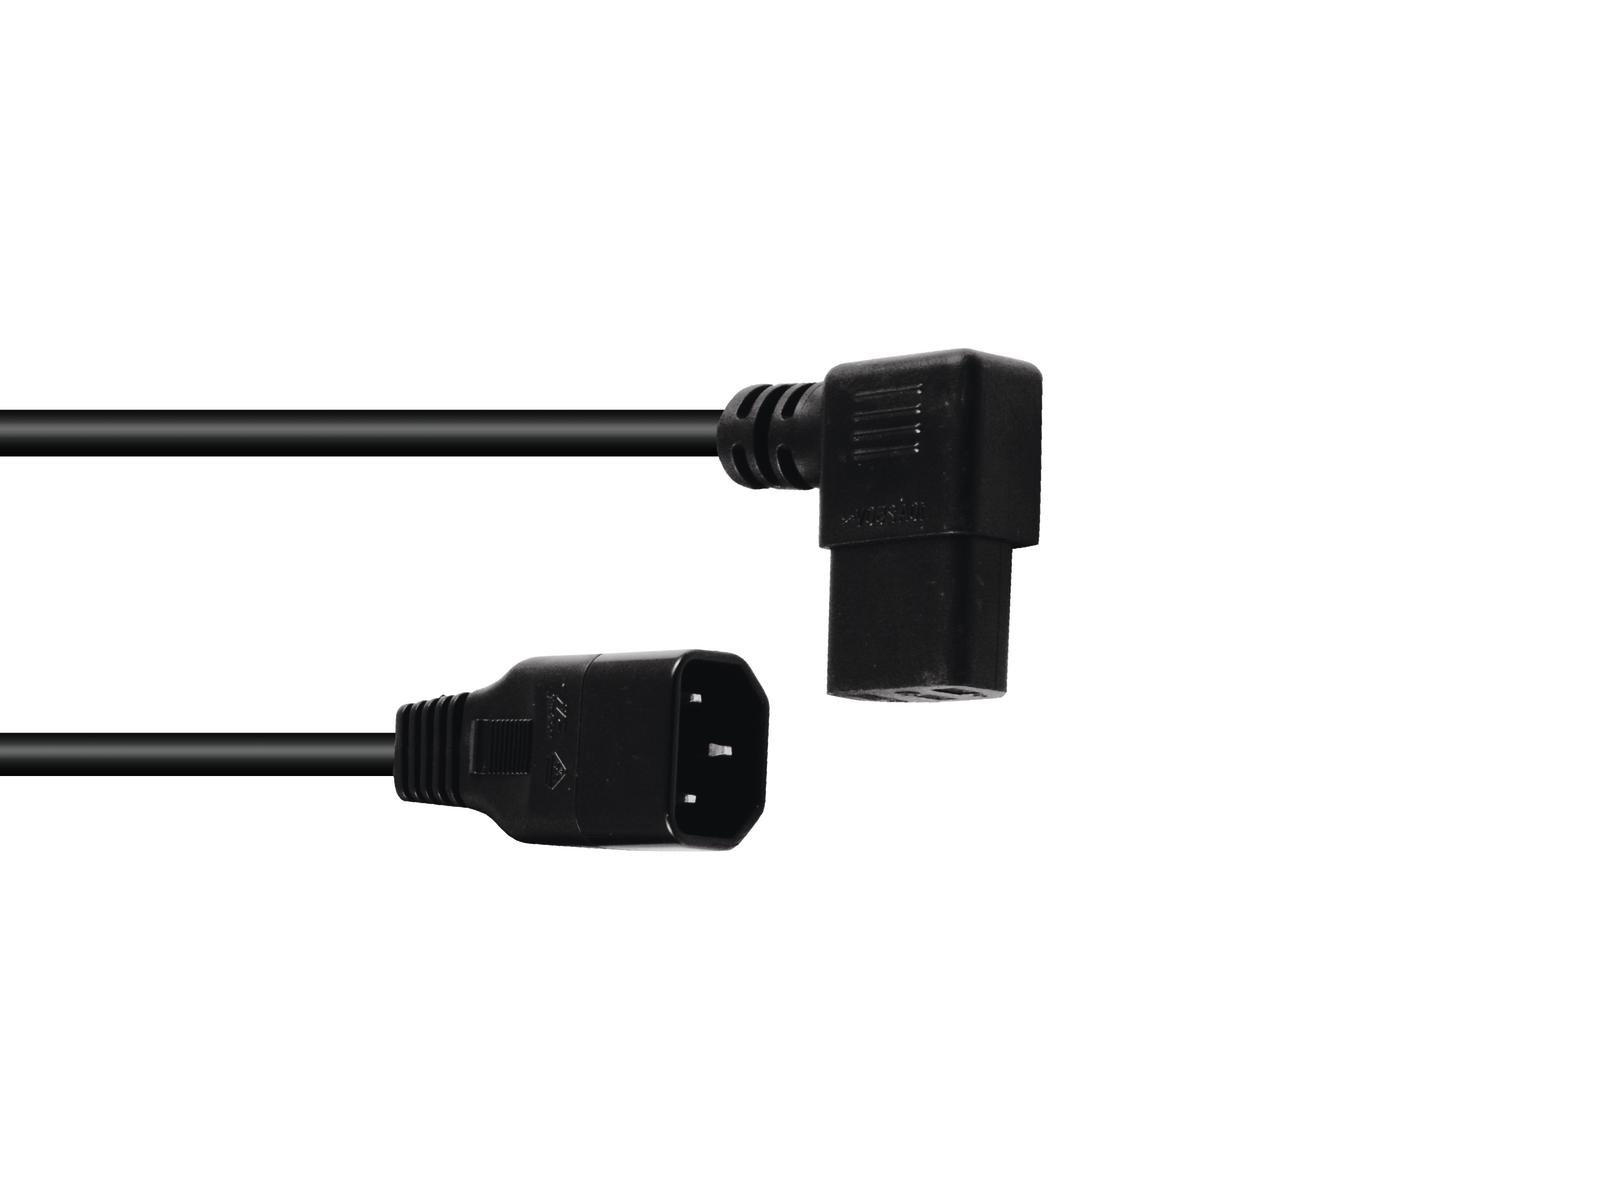 Kabel-Zuleitungen mit Schuko-Stecker 2,5m 3x0,75 schwarz